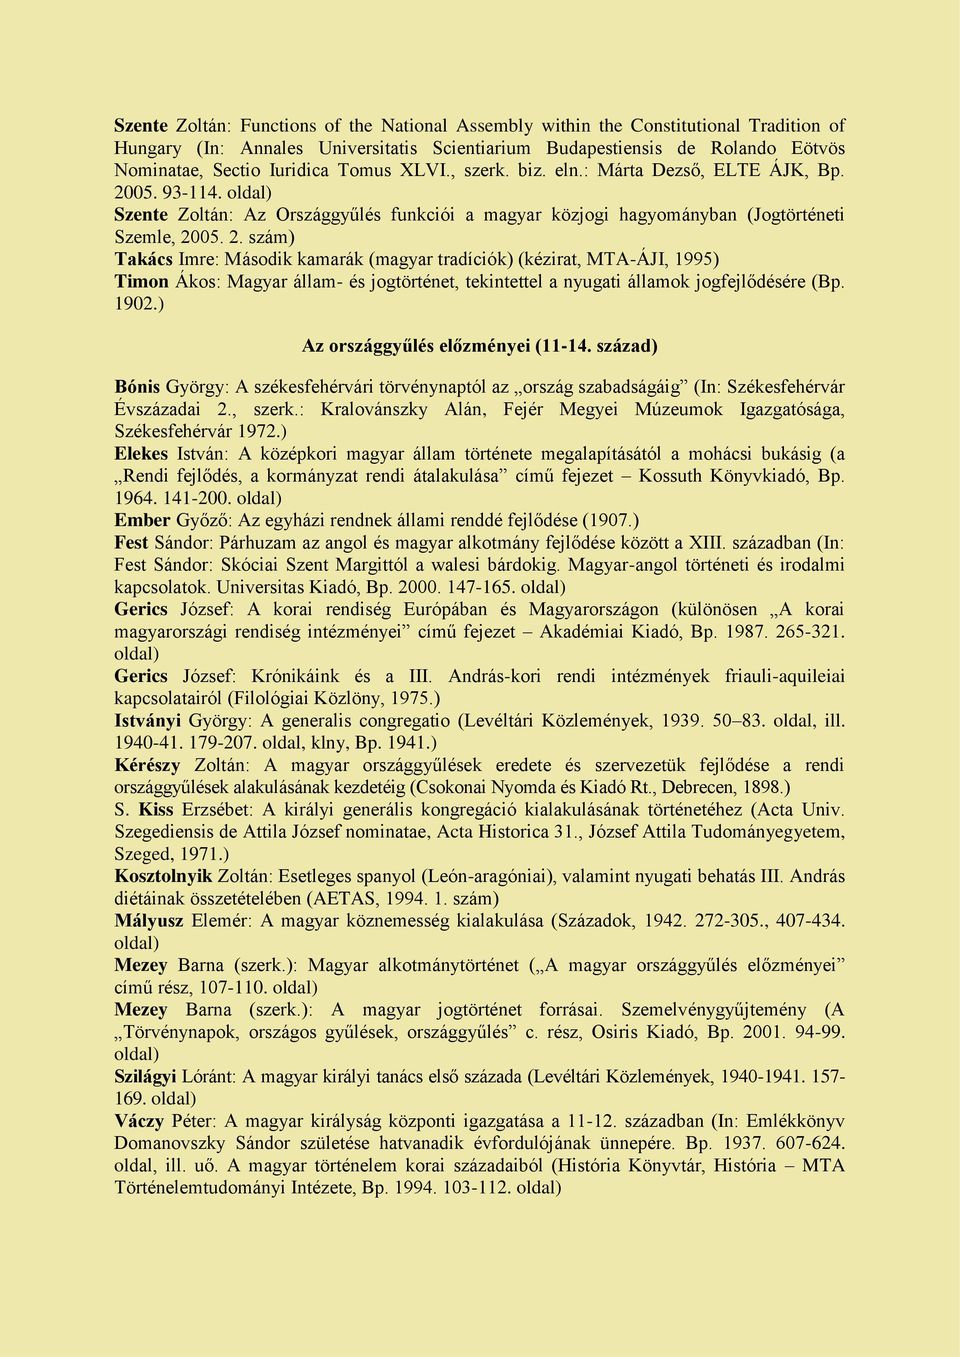 05. 93-114. oldal) Szente Zoltán: Az Országgyűlés funkciói a magyar közjogi hagyományban (Jogtörténeti Szemle, 20